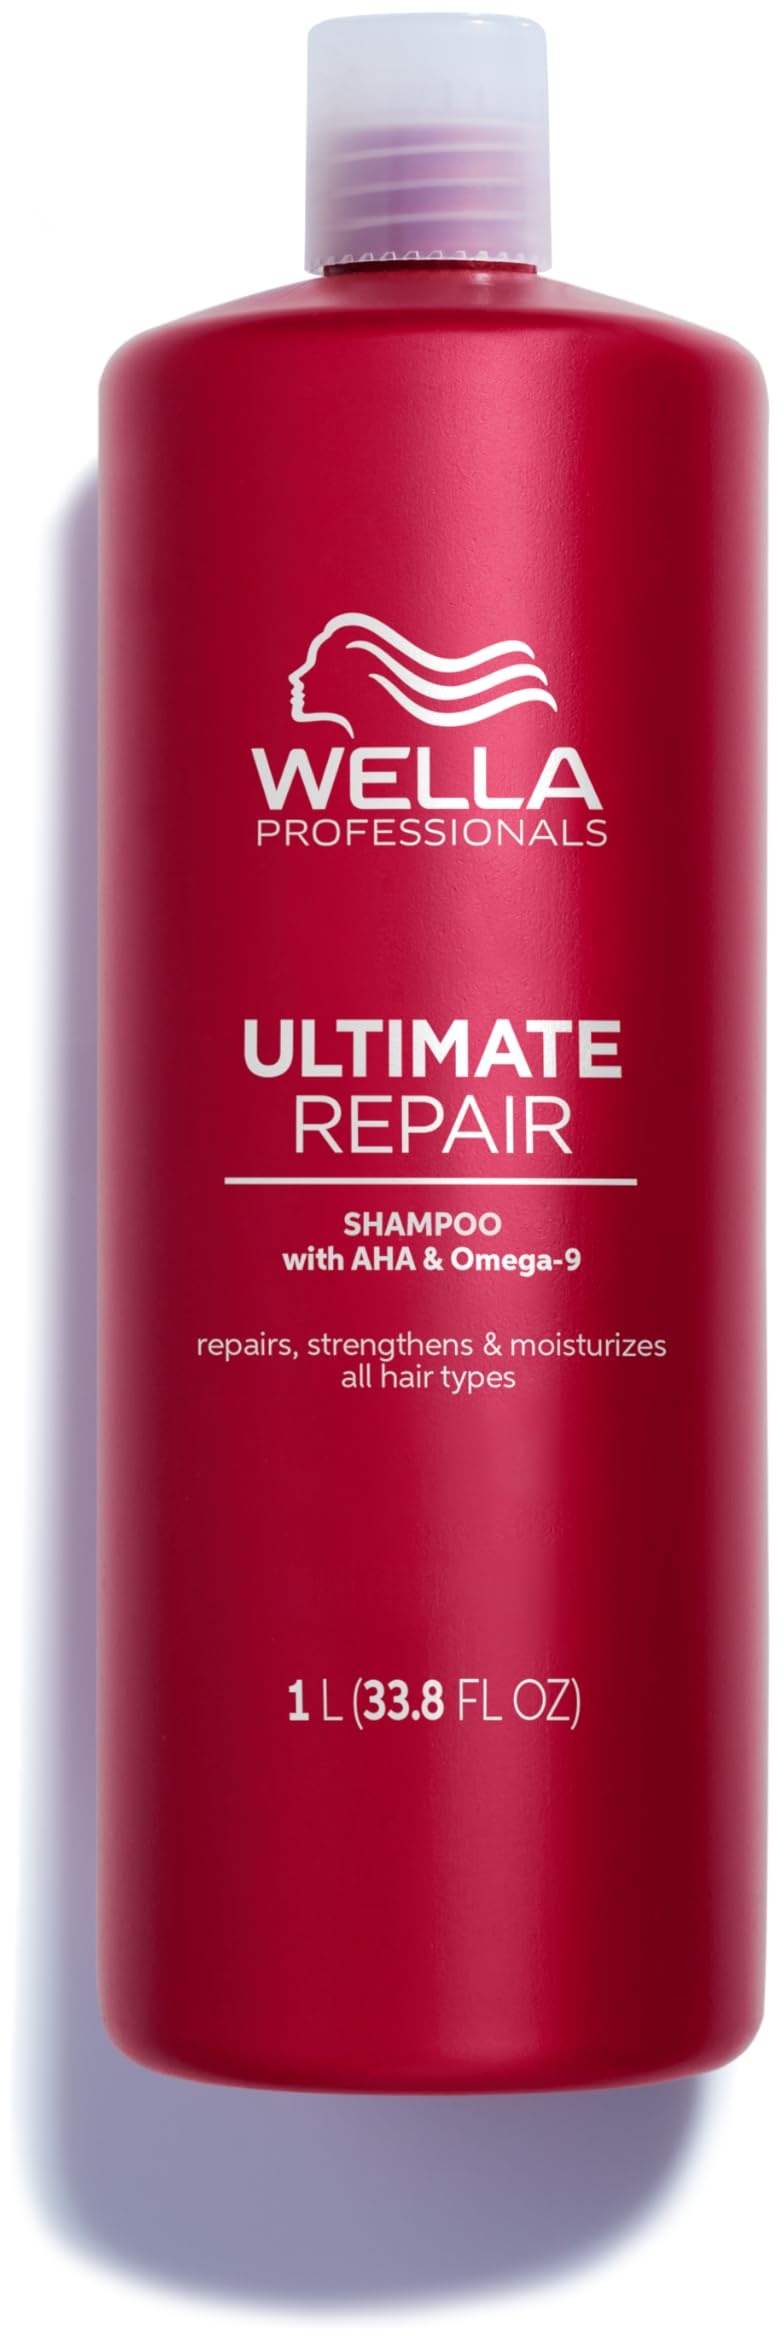 Wella Professionals Ultimate Repair Shampoo zur Tiefenreinigung – reparierendes Shampoo mit Metal-Purifier-Technologie gegen Schadstoffe – Feuchtigkeitsshampoo mit luxuriösem Duft – 1 L